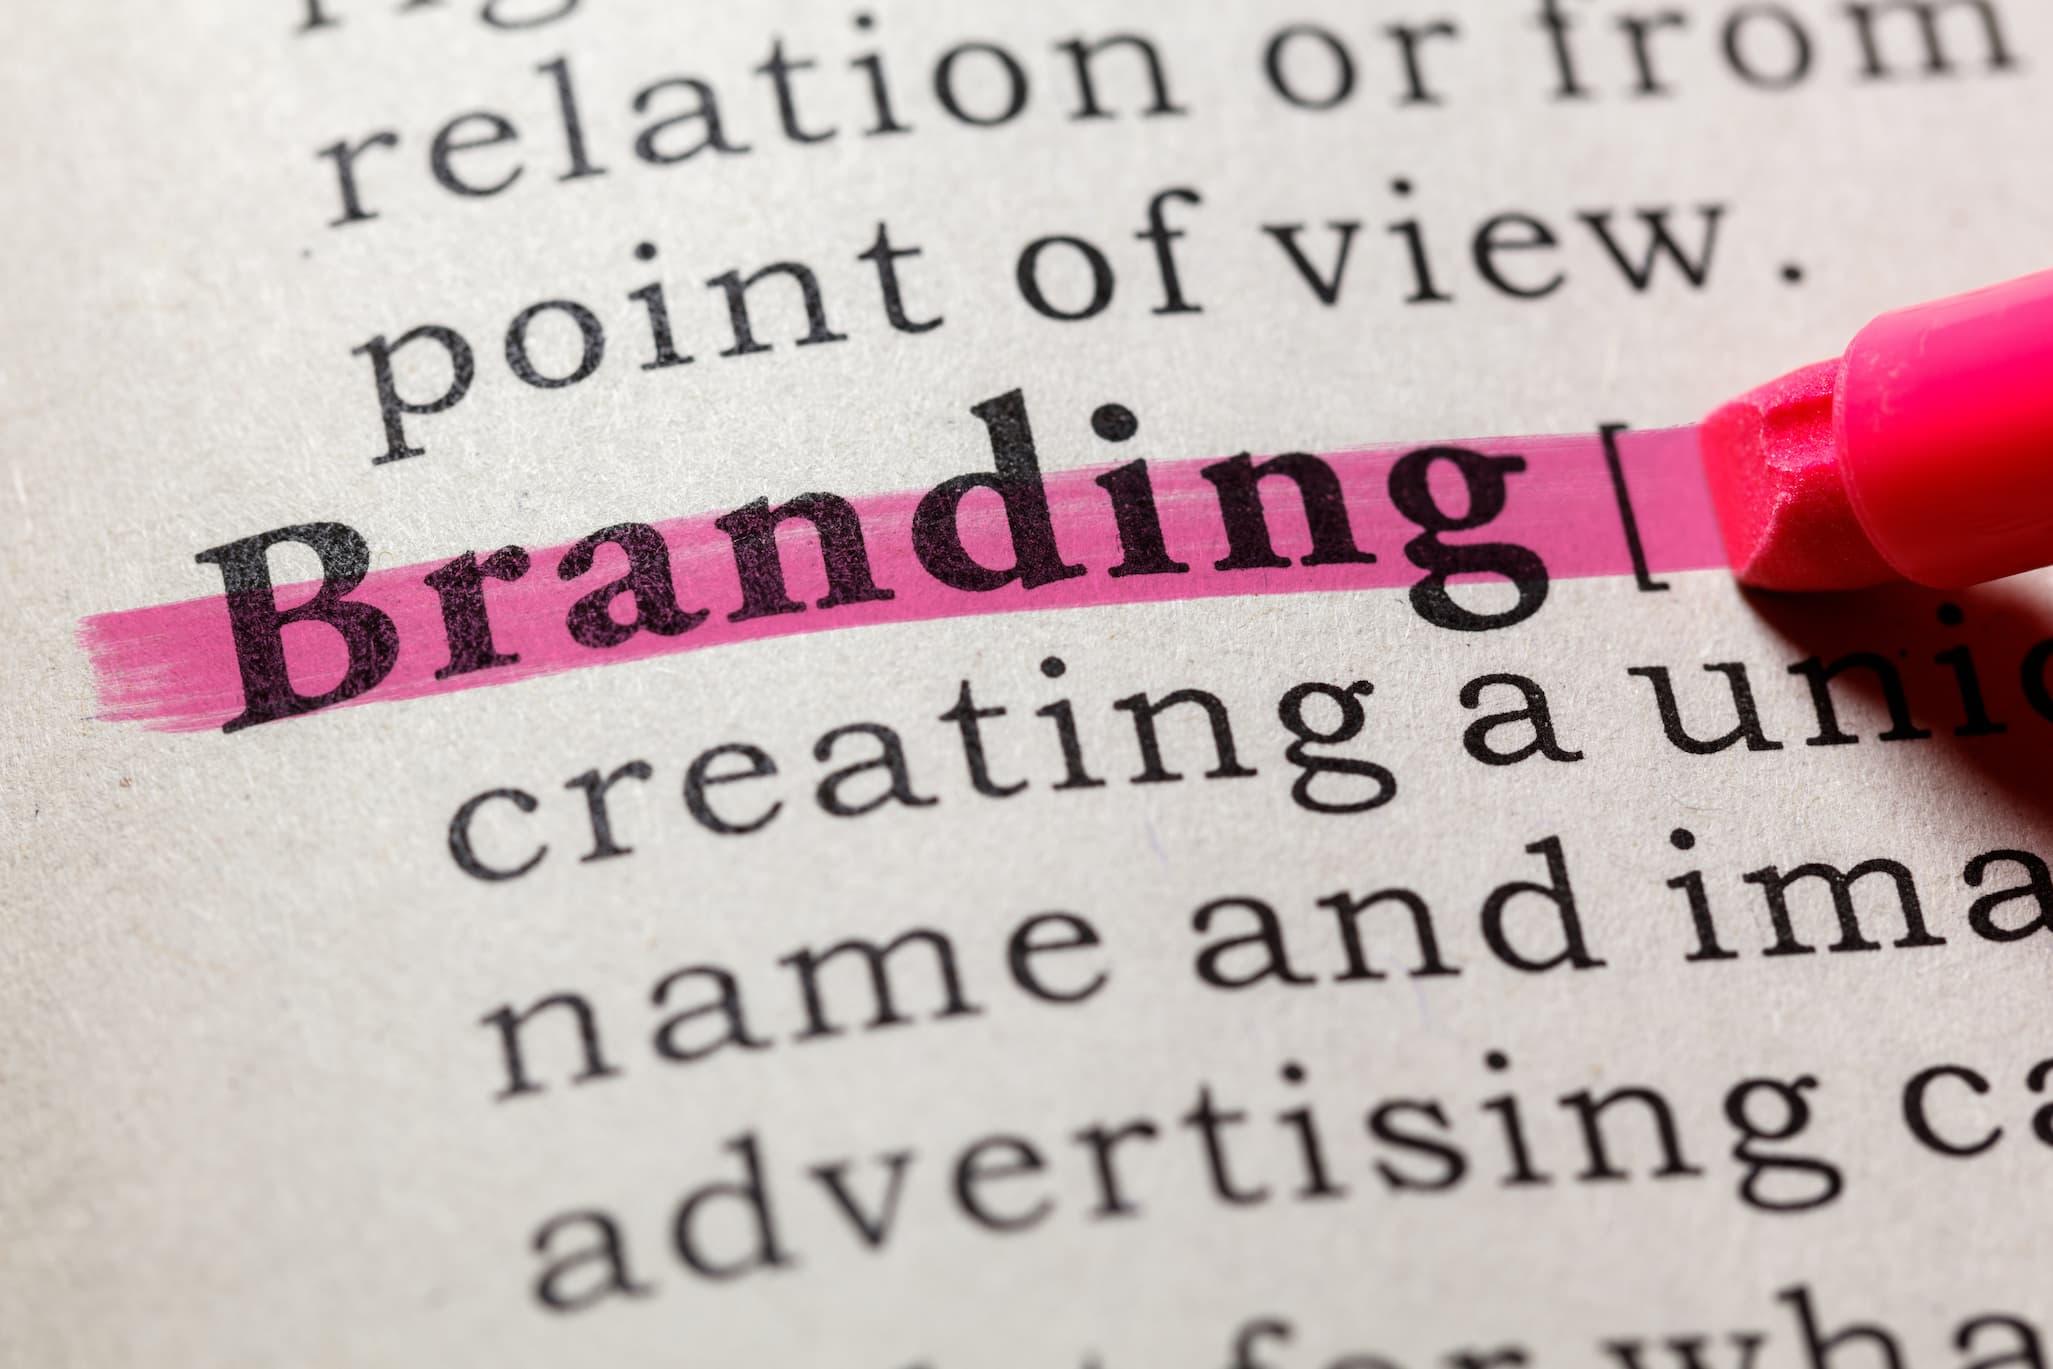 Sebrae Minas - Branding: os passos fundamentais